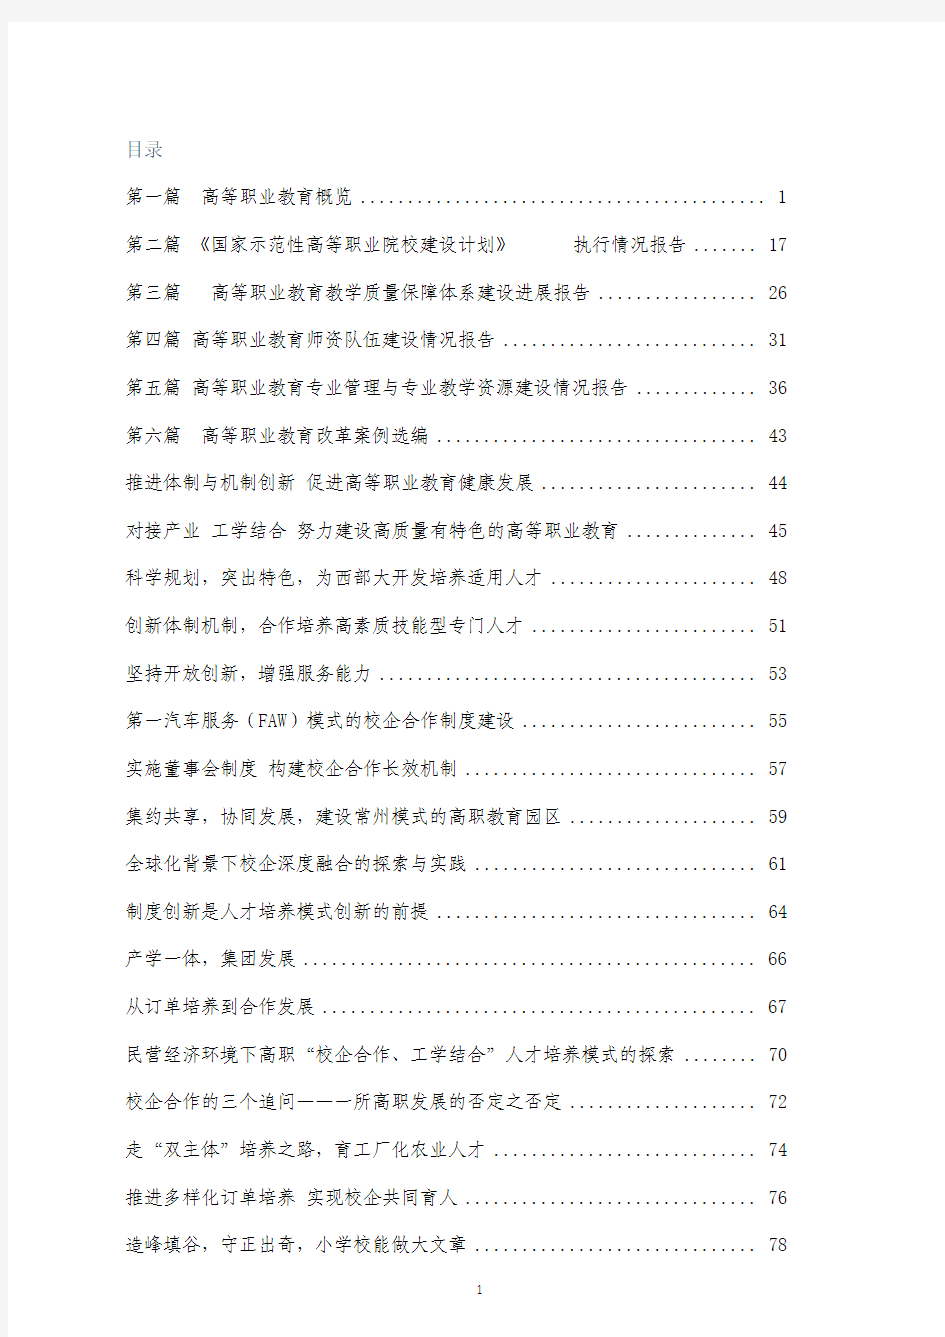 中国高等职业教育年度报告(2009年)